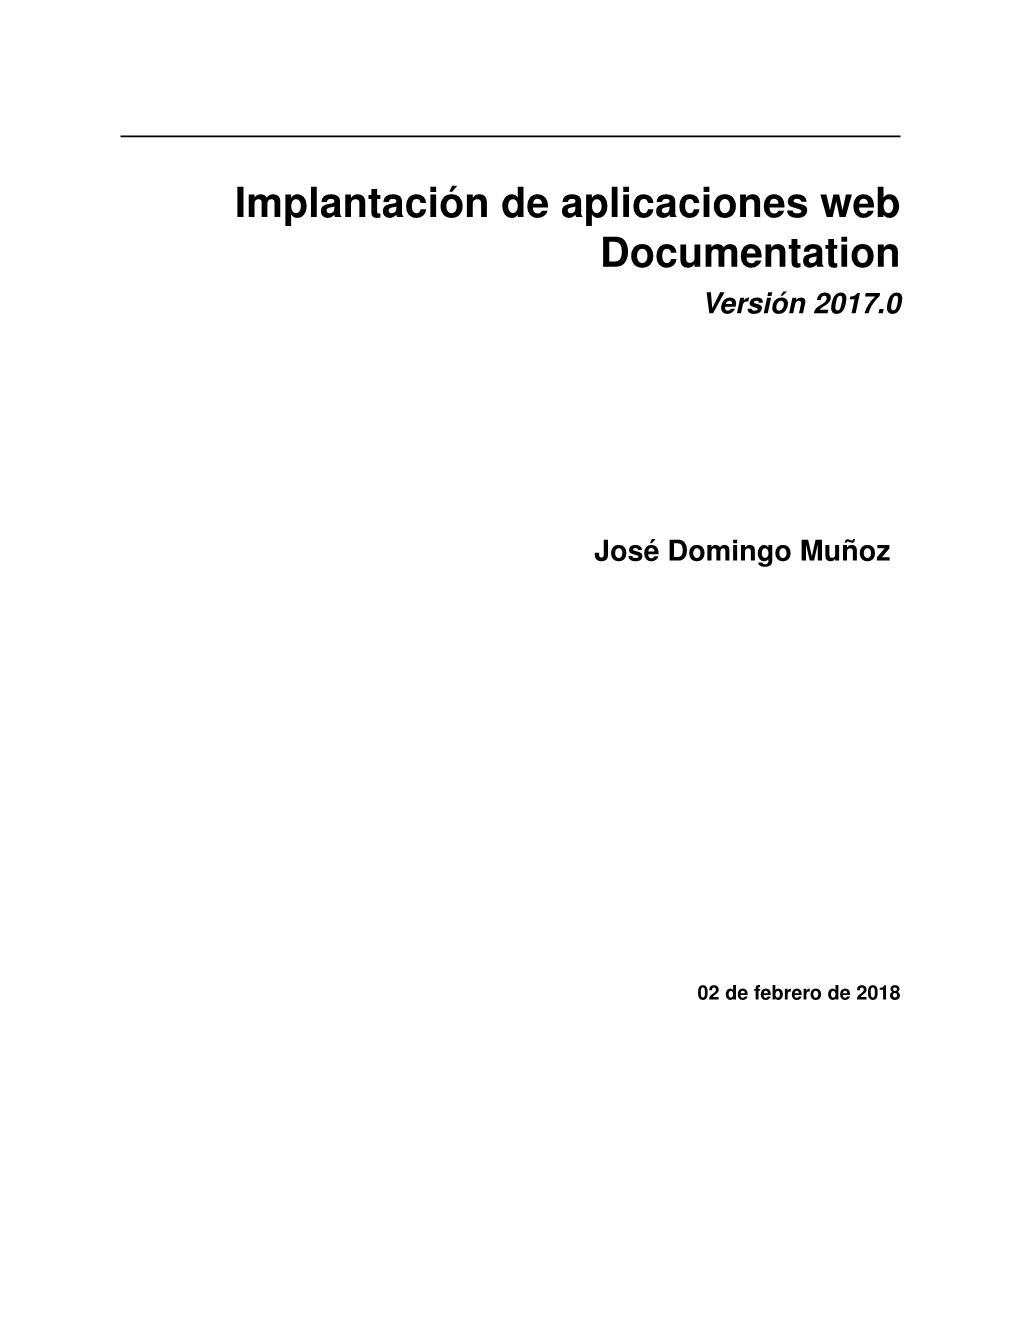 Implantación De Aplicaciones Web Documentation Versión 2017.0